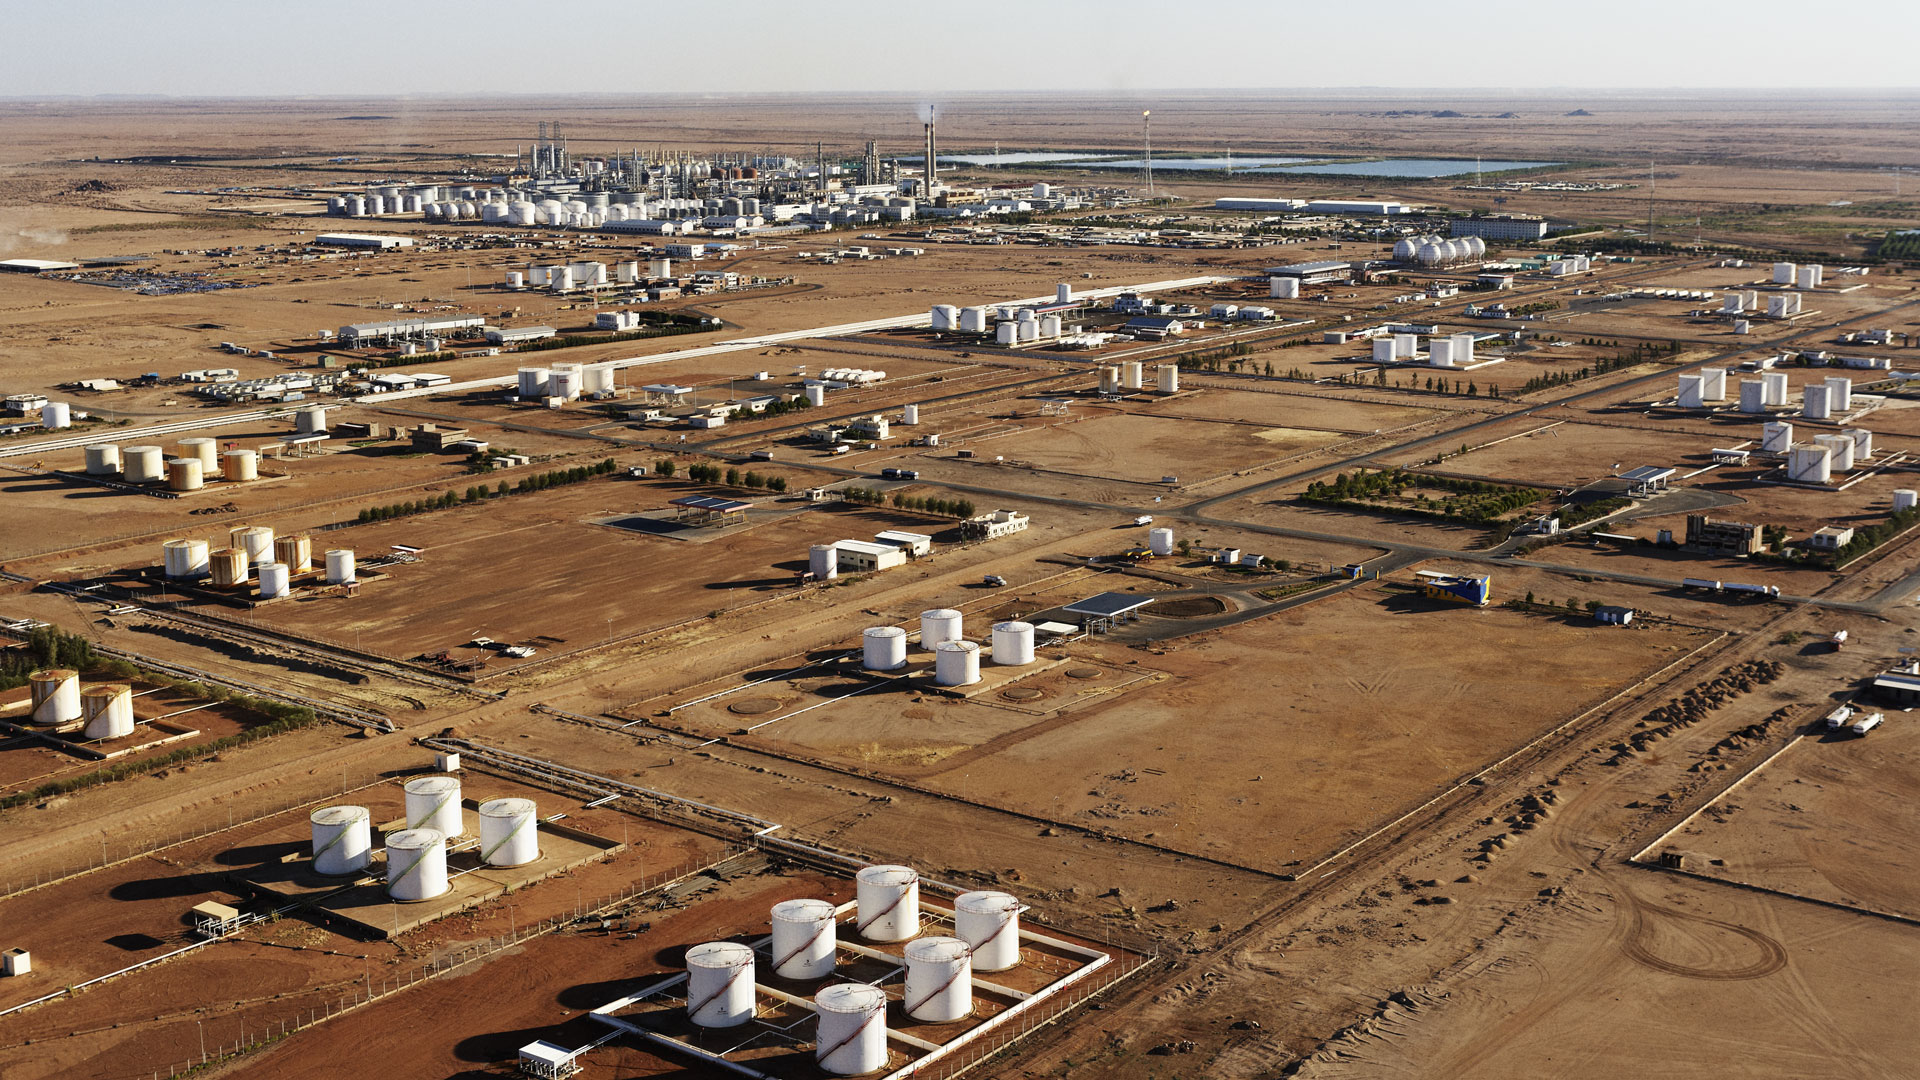 【走進非洲】2000年，中國石油在海外合資建設的第一座煉廠——蘇丹喀土穆煉廠建成投產，結束了蘇丹長期進口的歷史，被譽為“非洲大陸上的一顆明珠”。圖：蘇丹煉廠常減壓生產裝置。 隱藏文字說明